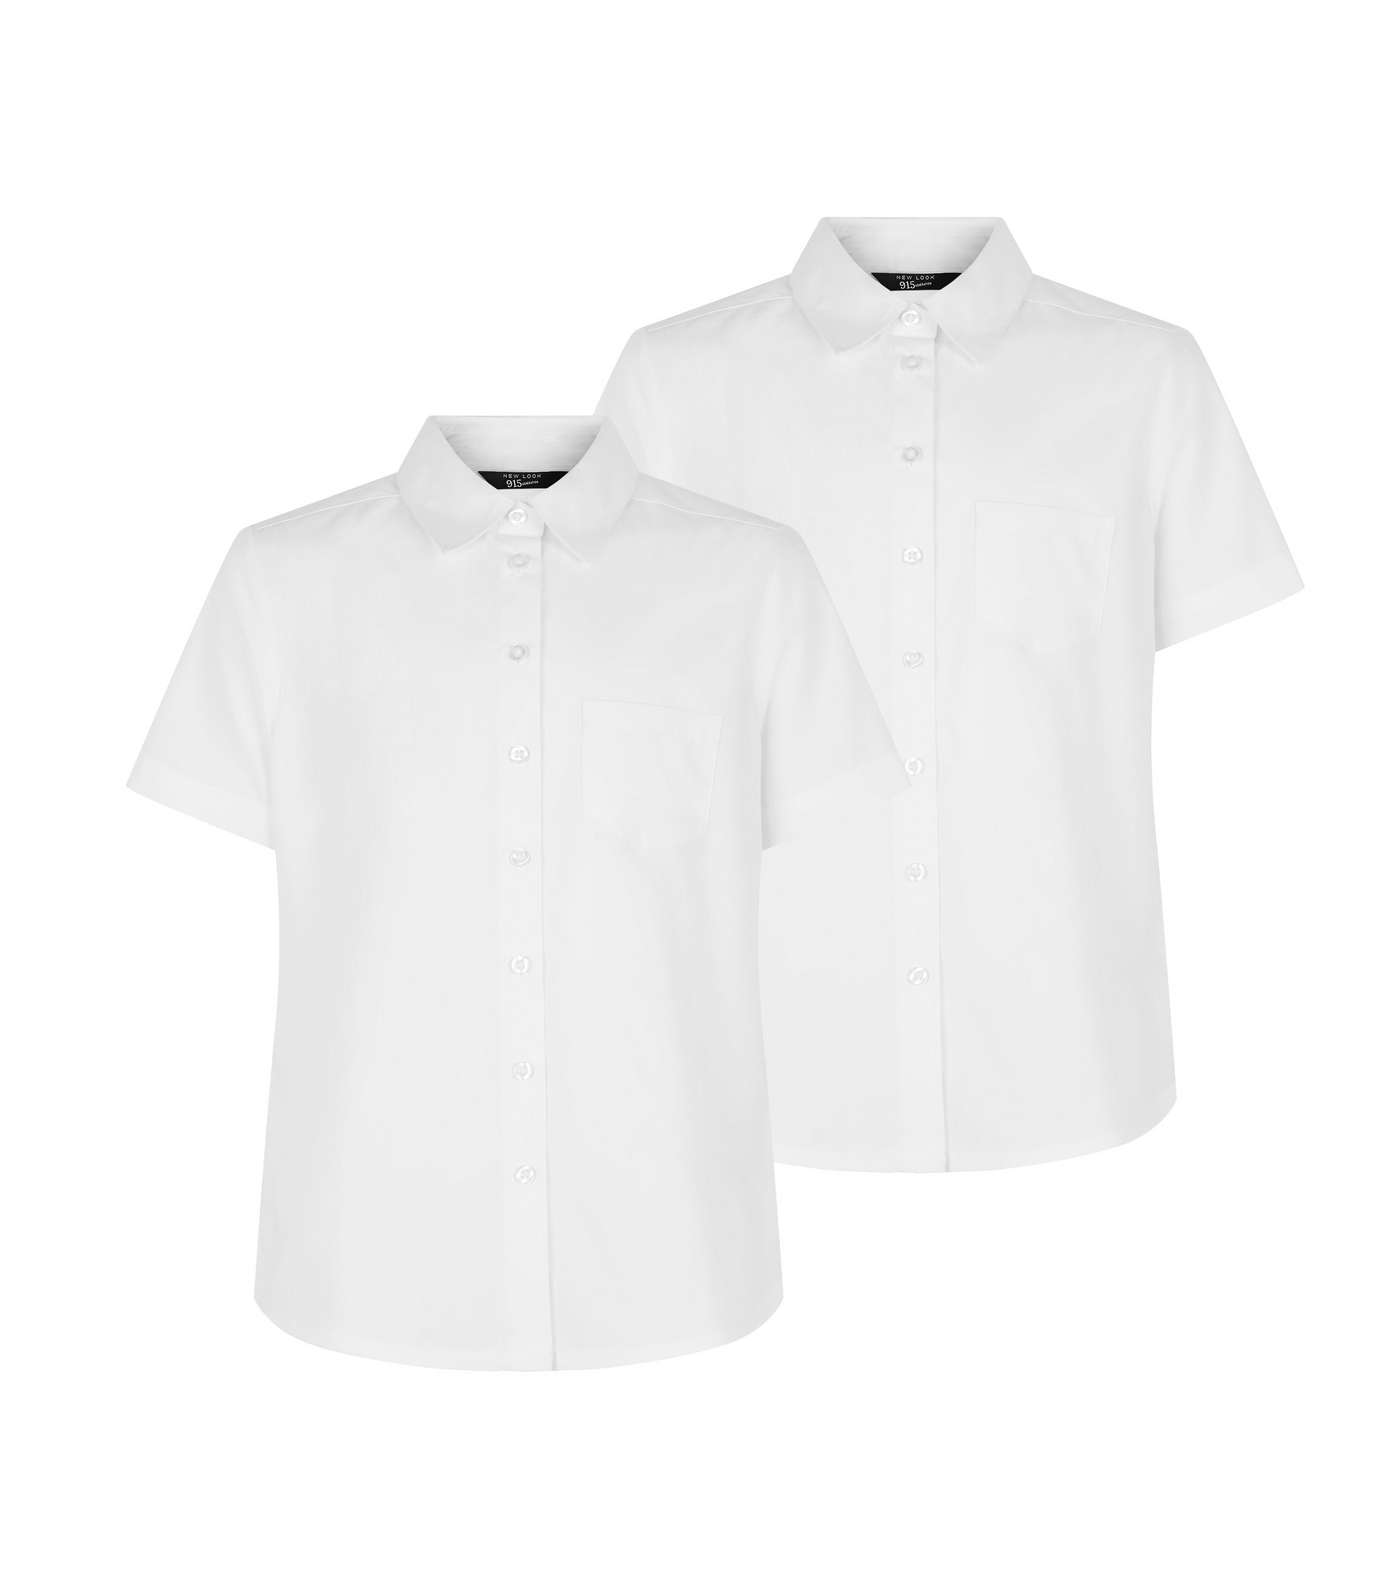 Girls 2 Pack White Short Sleeve Shirts Image 4